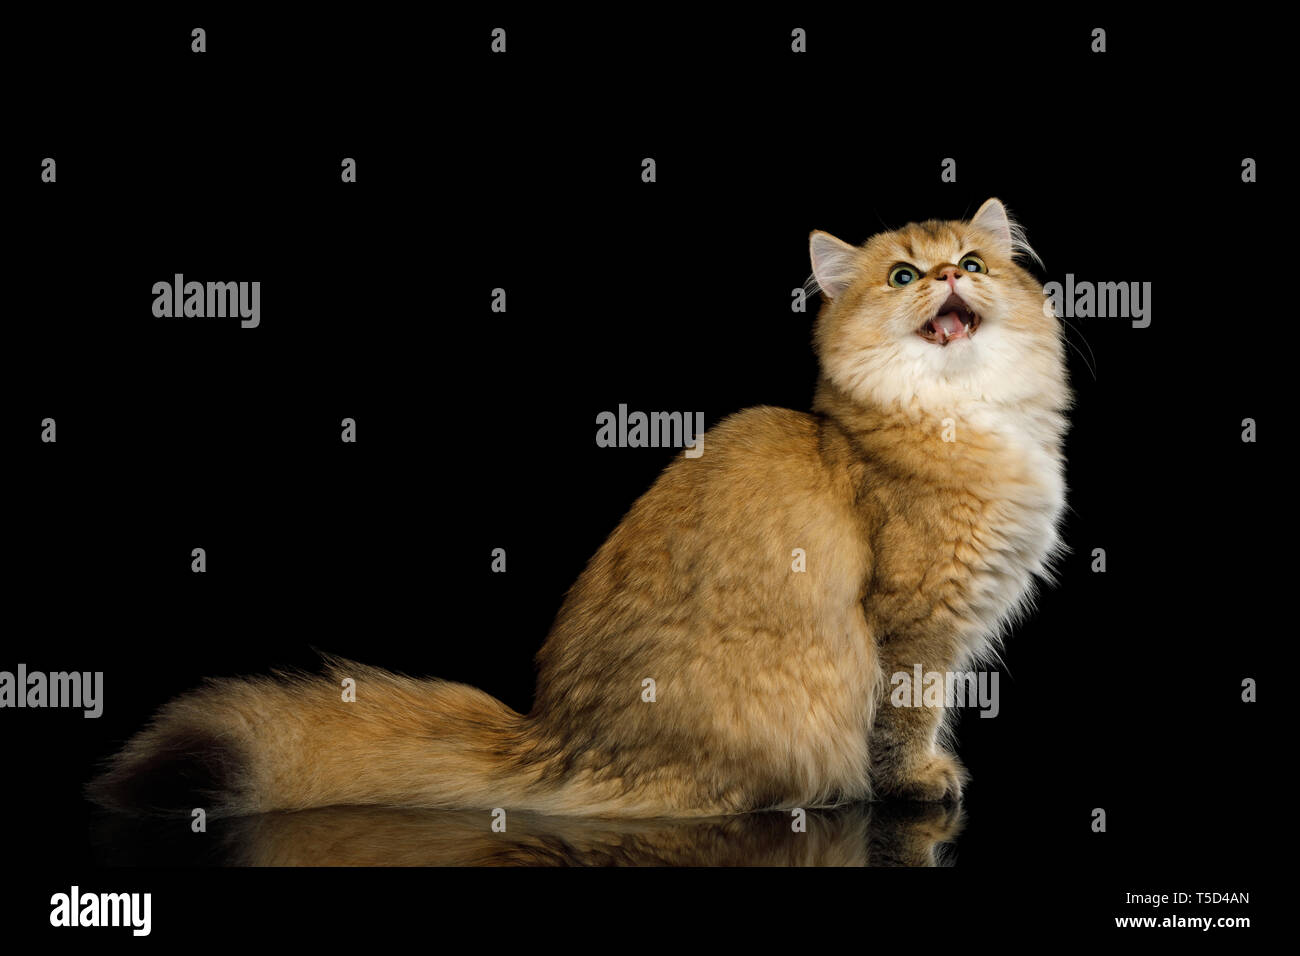 Ein Dominantes Männchen, Eine Rote Katze Mit Hoden Ohne Schwanz Liegt Auf  Der Seite Unter Dem Auto. Lizenzfreie Fotos, Bilder und Stock Fotografie.  Image 105302190.